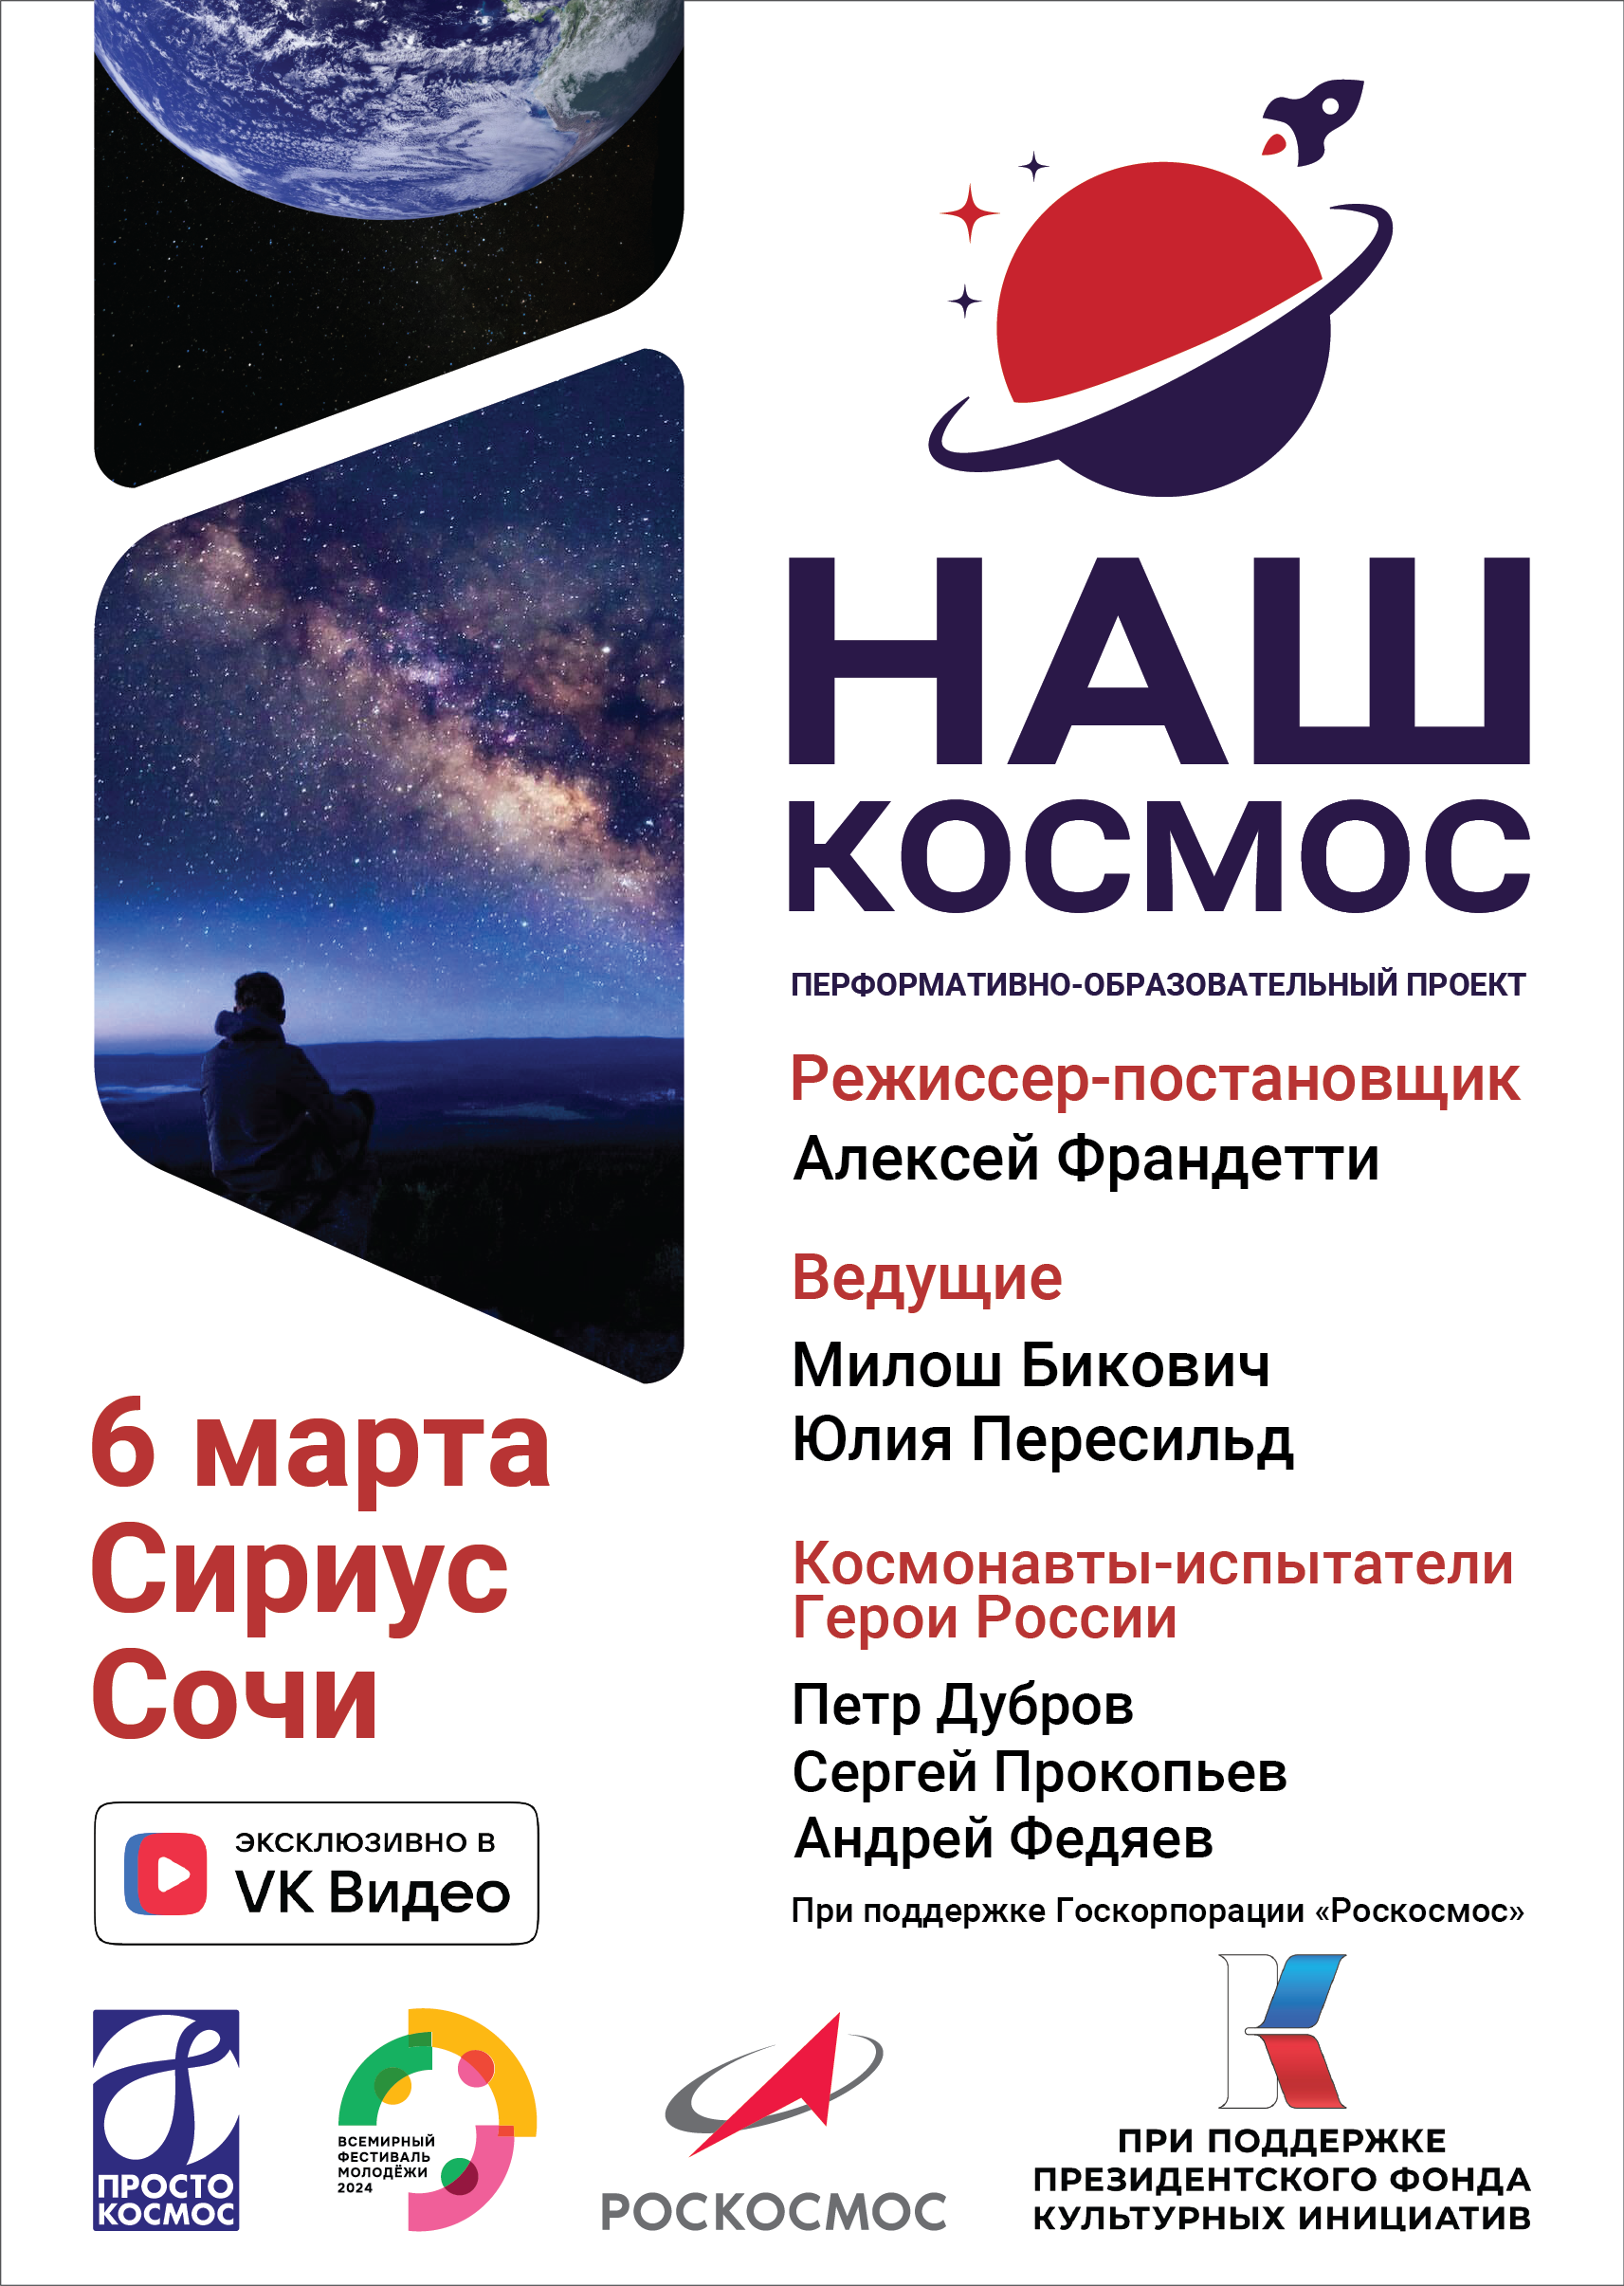 Премьера перформативно-образовательного проекта «Наш Космос» пройдет 6 марта на Всемирном фестивале молодежи в сочинском центре «Сириус».